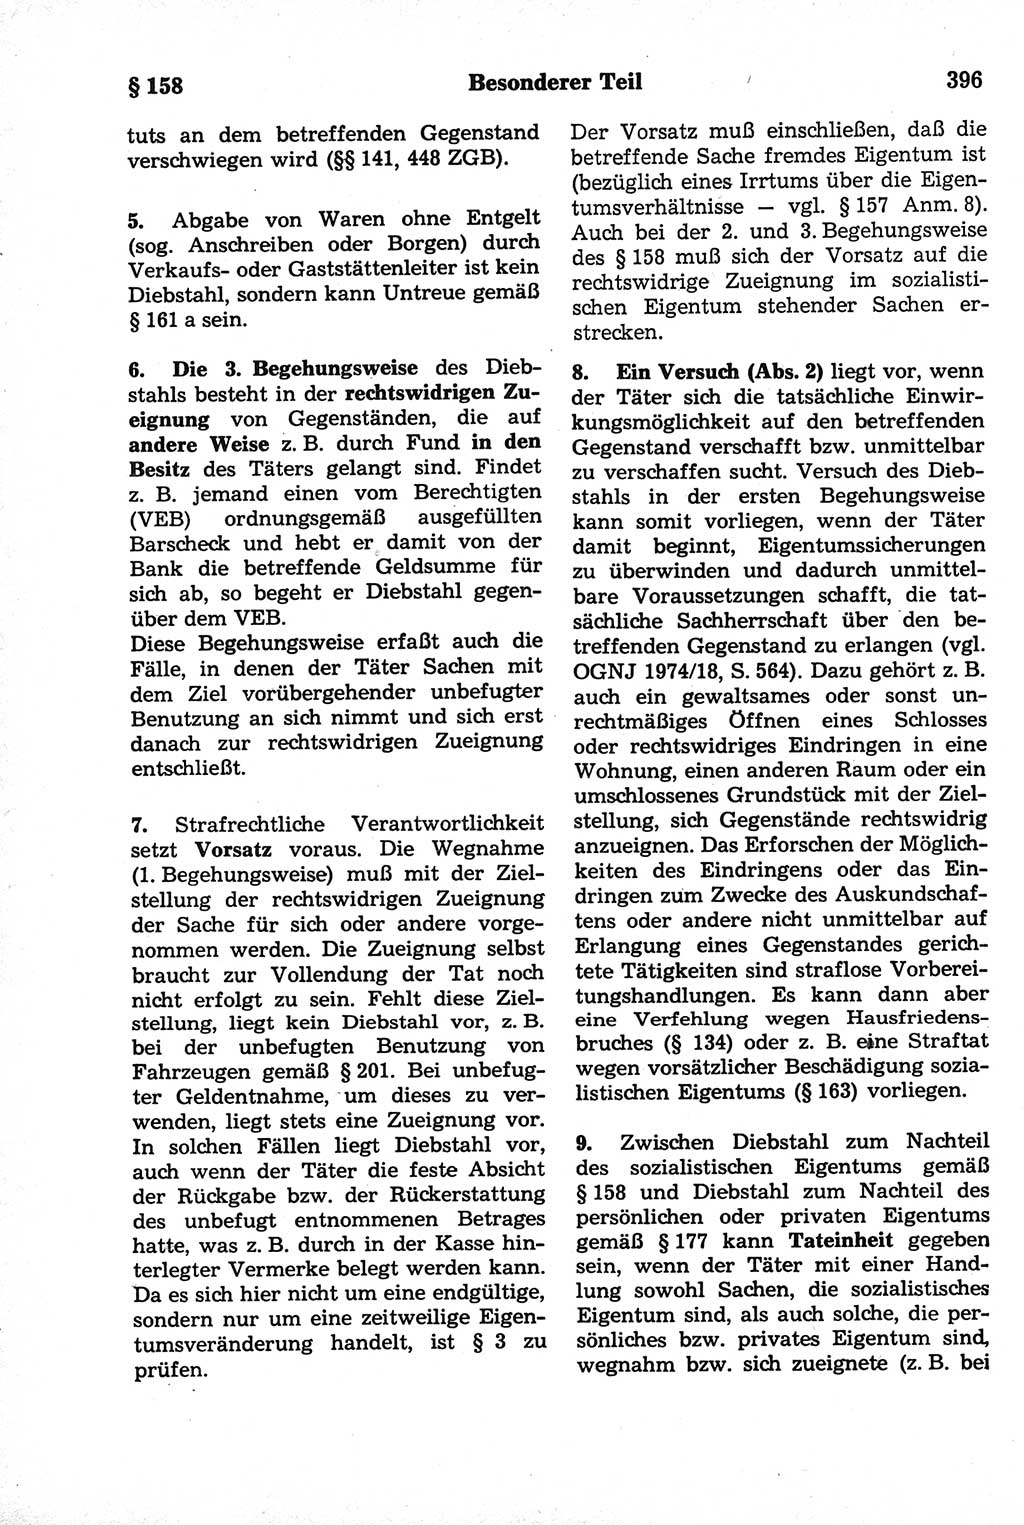 Strafrecht der Deutschen Demokratischen Republik (DDR), Kommentar zum Strafgesetzbuch (StGB) 1981, Seite 396 (Strafr. DDR Komm. StGB 1981, S. 396)